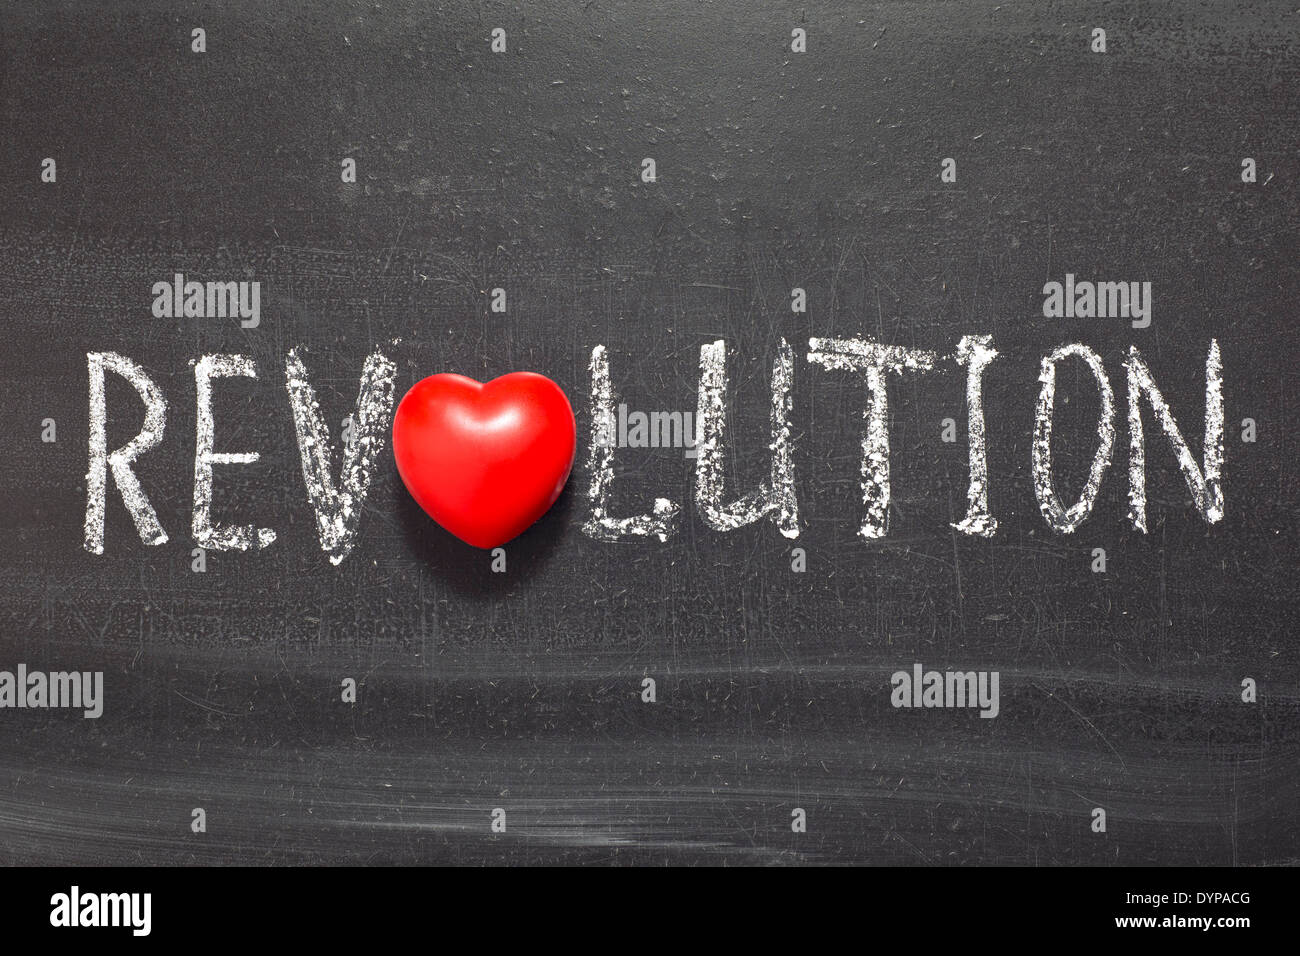 Revolution-Wort handschriftlich auf Tafel mit Herzsymbol statt O Stockfoto